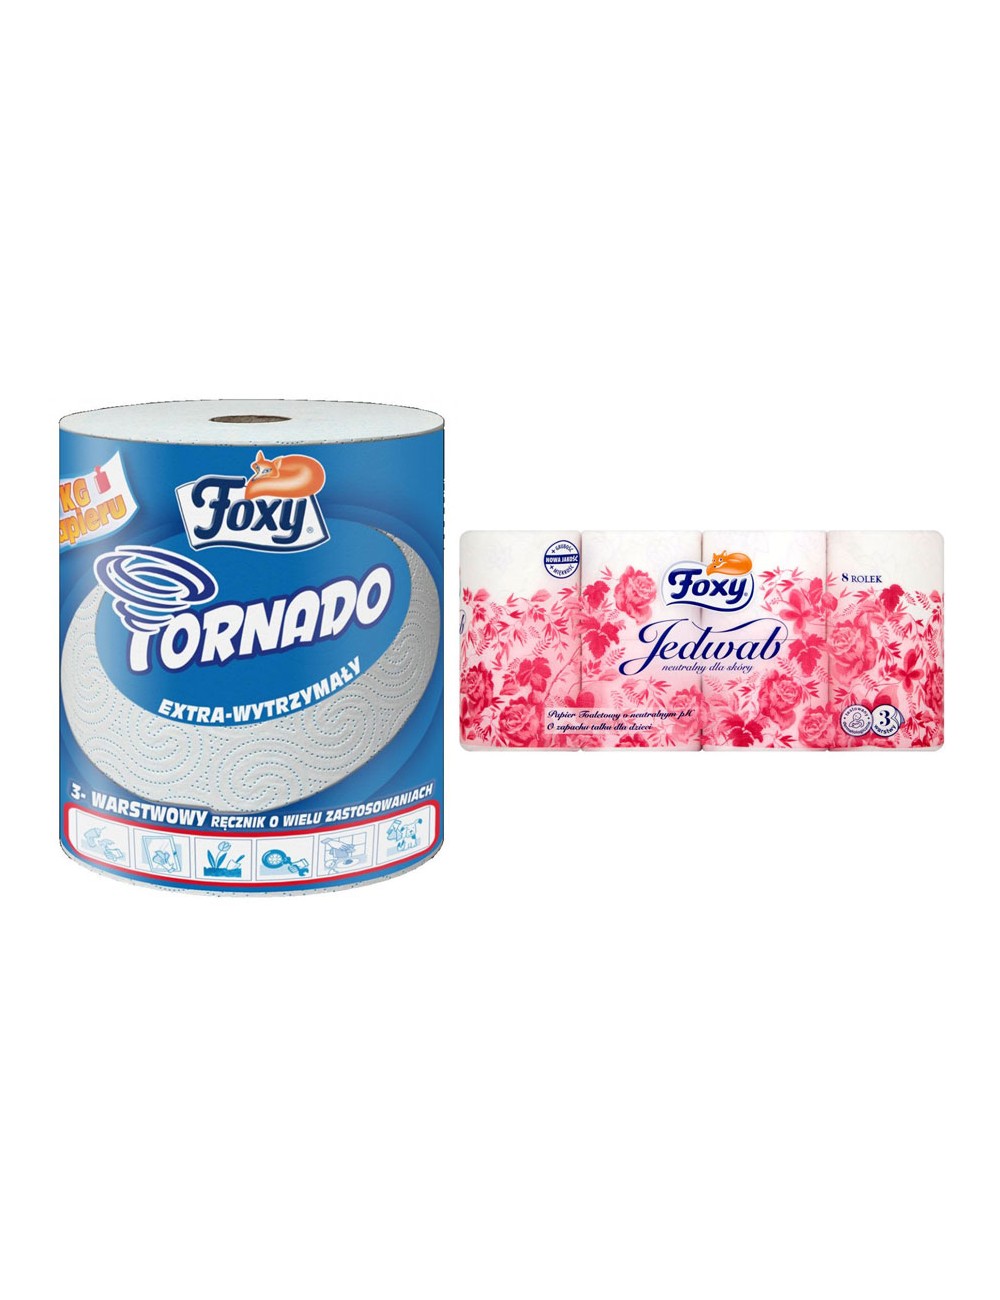 Foxy Ręcznik Papierowy Tornado Extra-wytrzymały 3-warstwowy Celuloza + Foxy Papier Toaletowy Jedwab - Zestaw ( 1 szt + 1 szt )